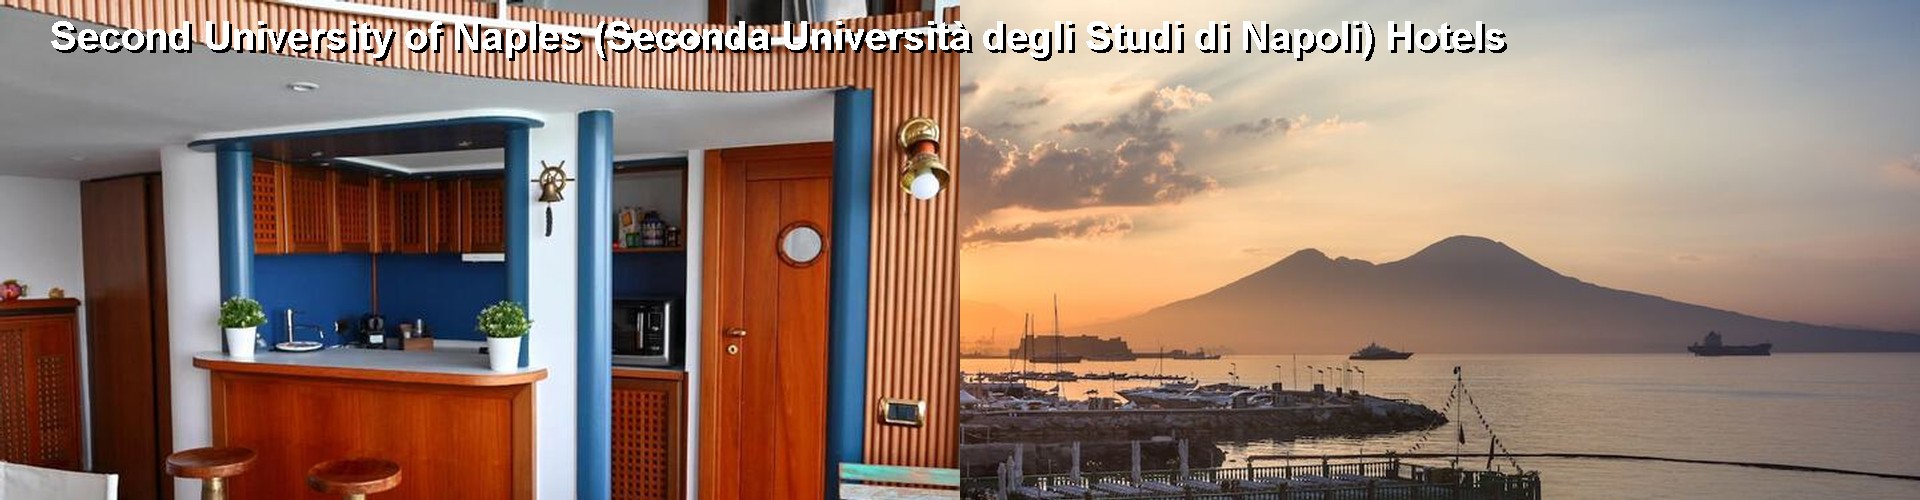 5 Best Hotels near Second University of Naples (Seconda Università degli Studi di Napoli)